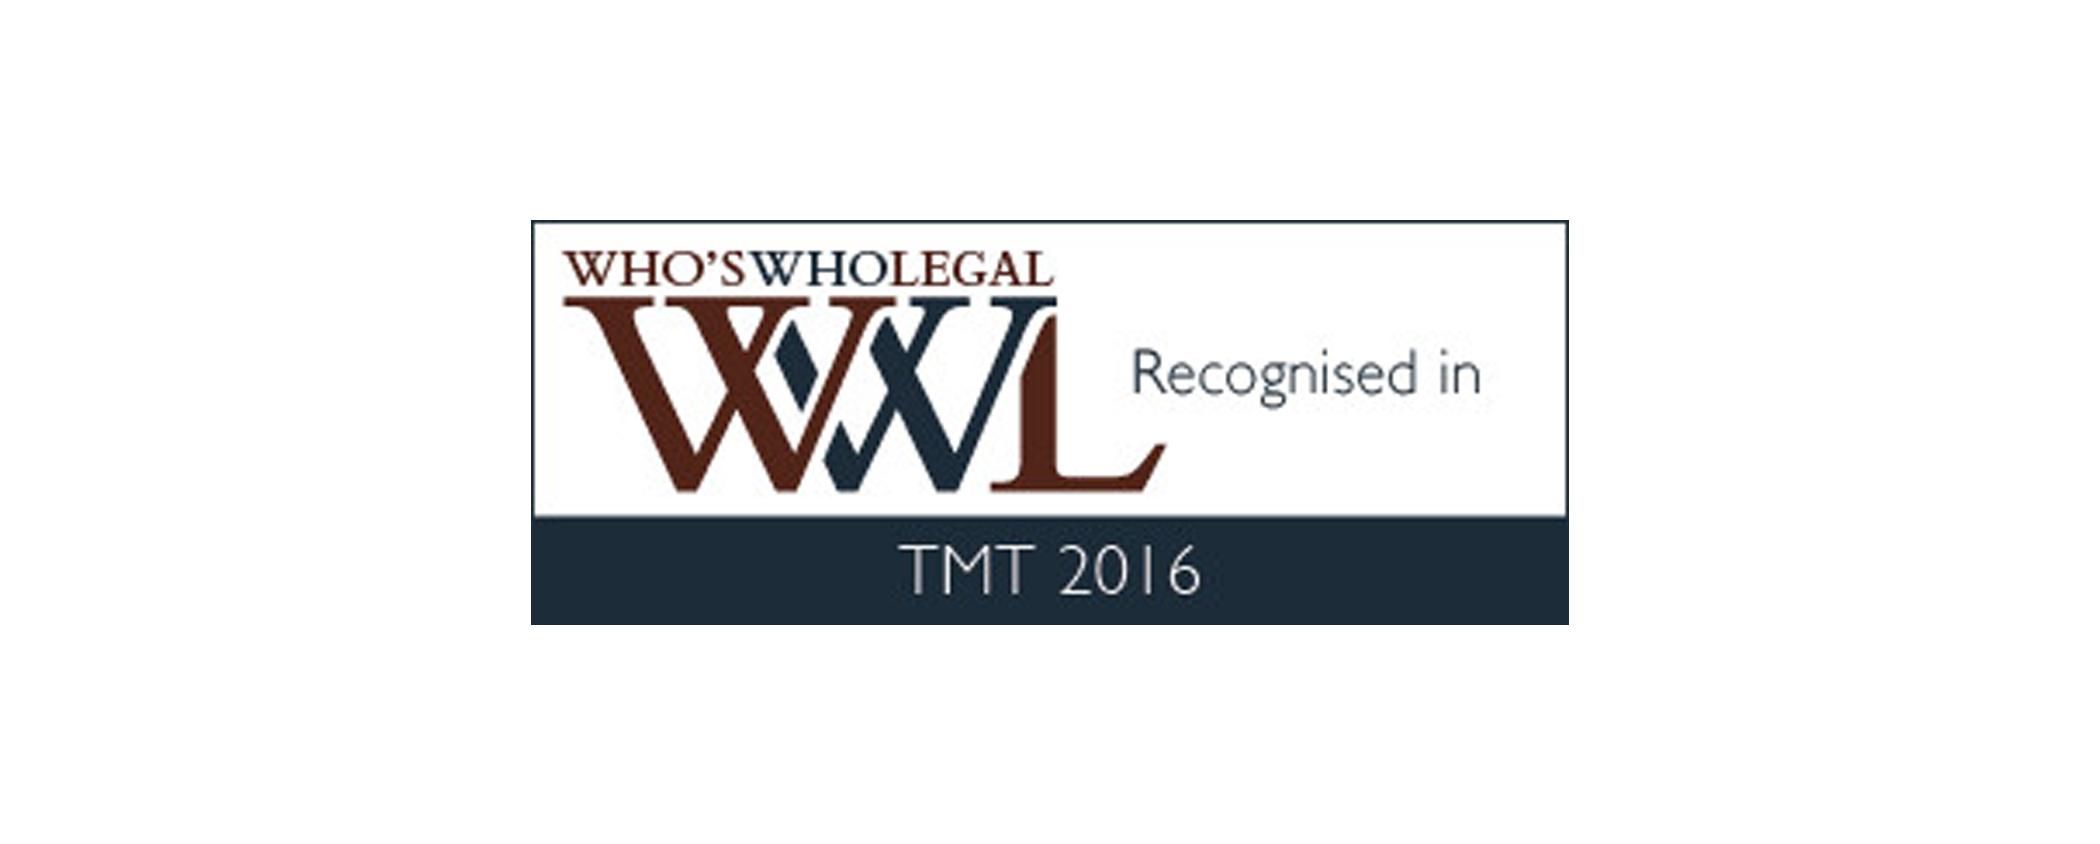 Auszeichnung für Karl H. Lincke durch Who’s Who Legal